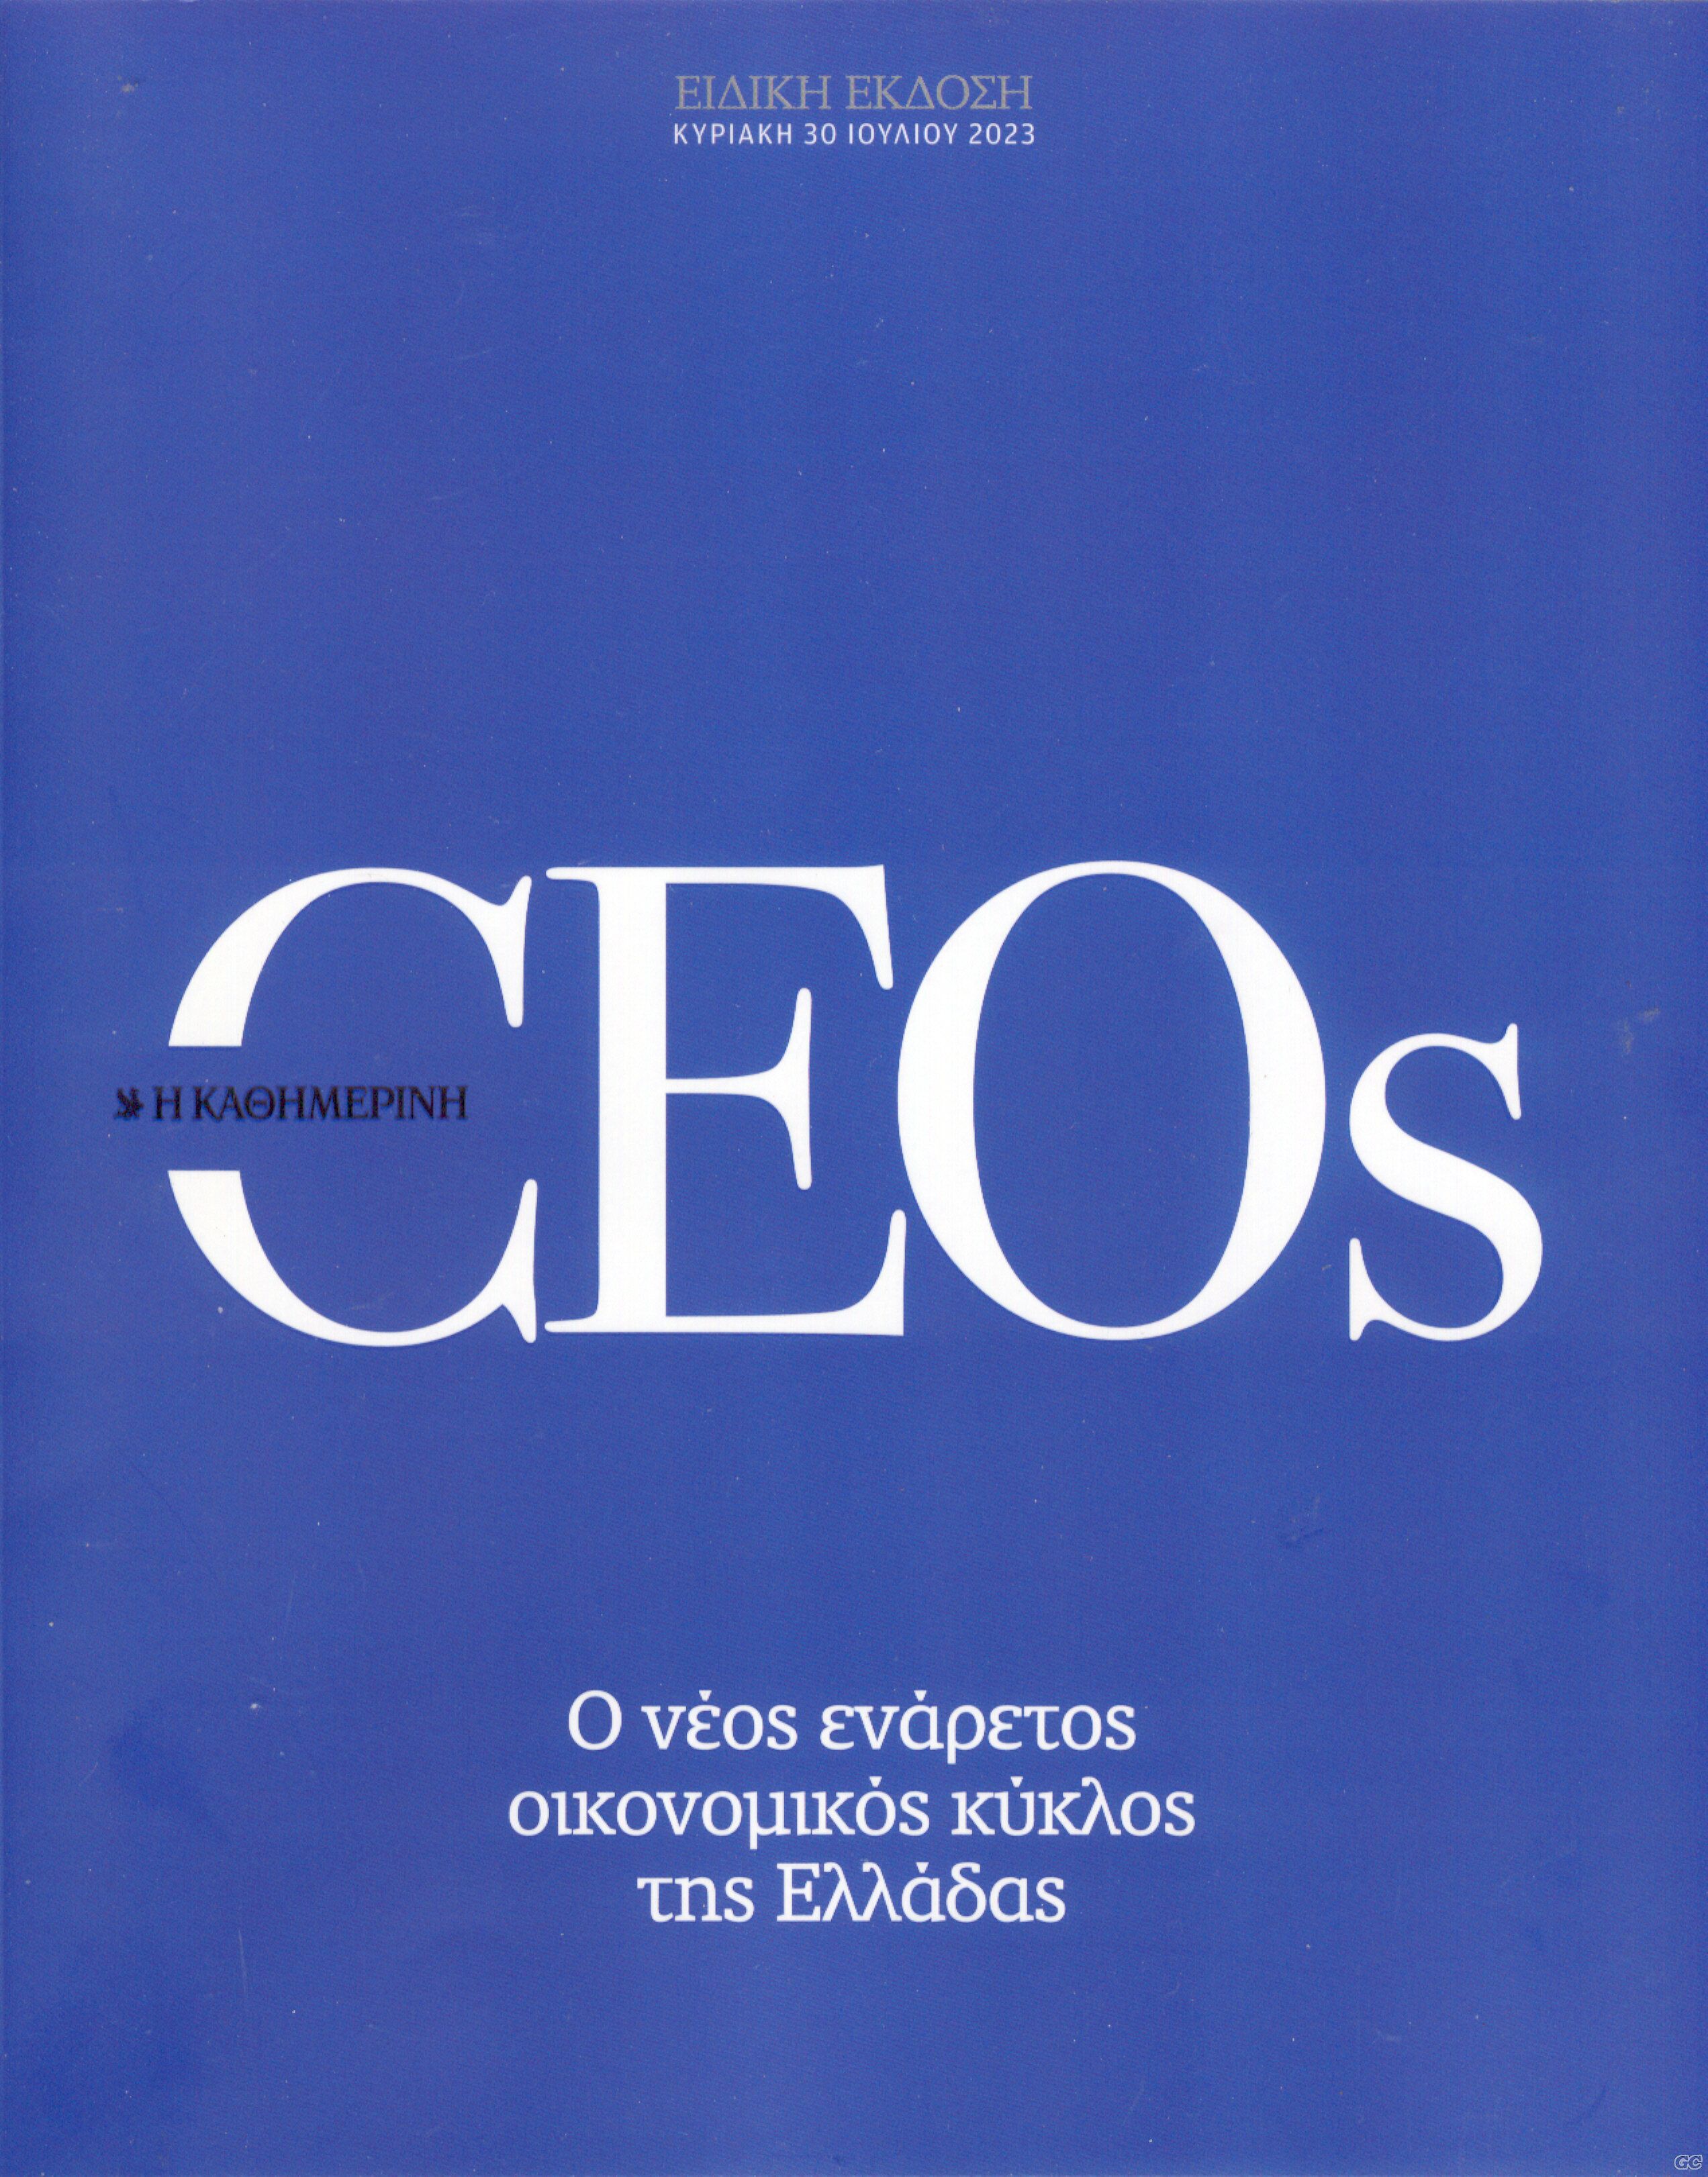 CEOS_0002.jpg